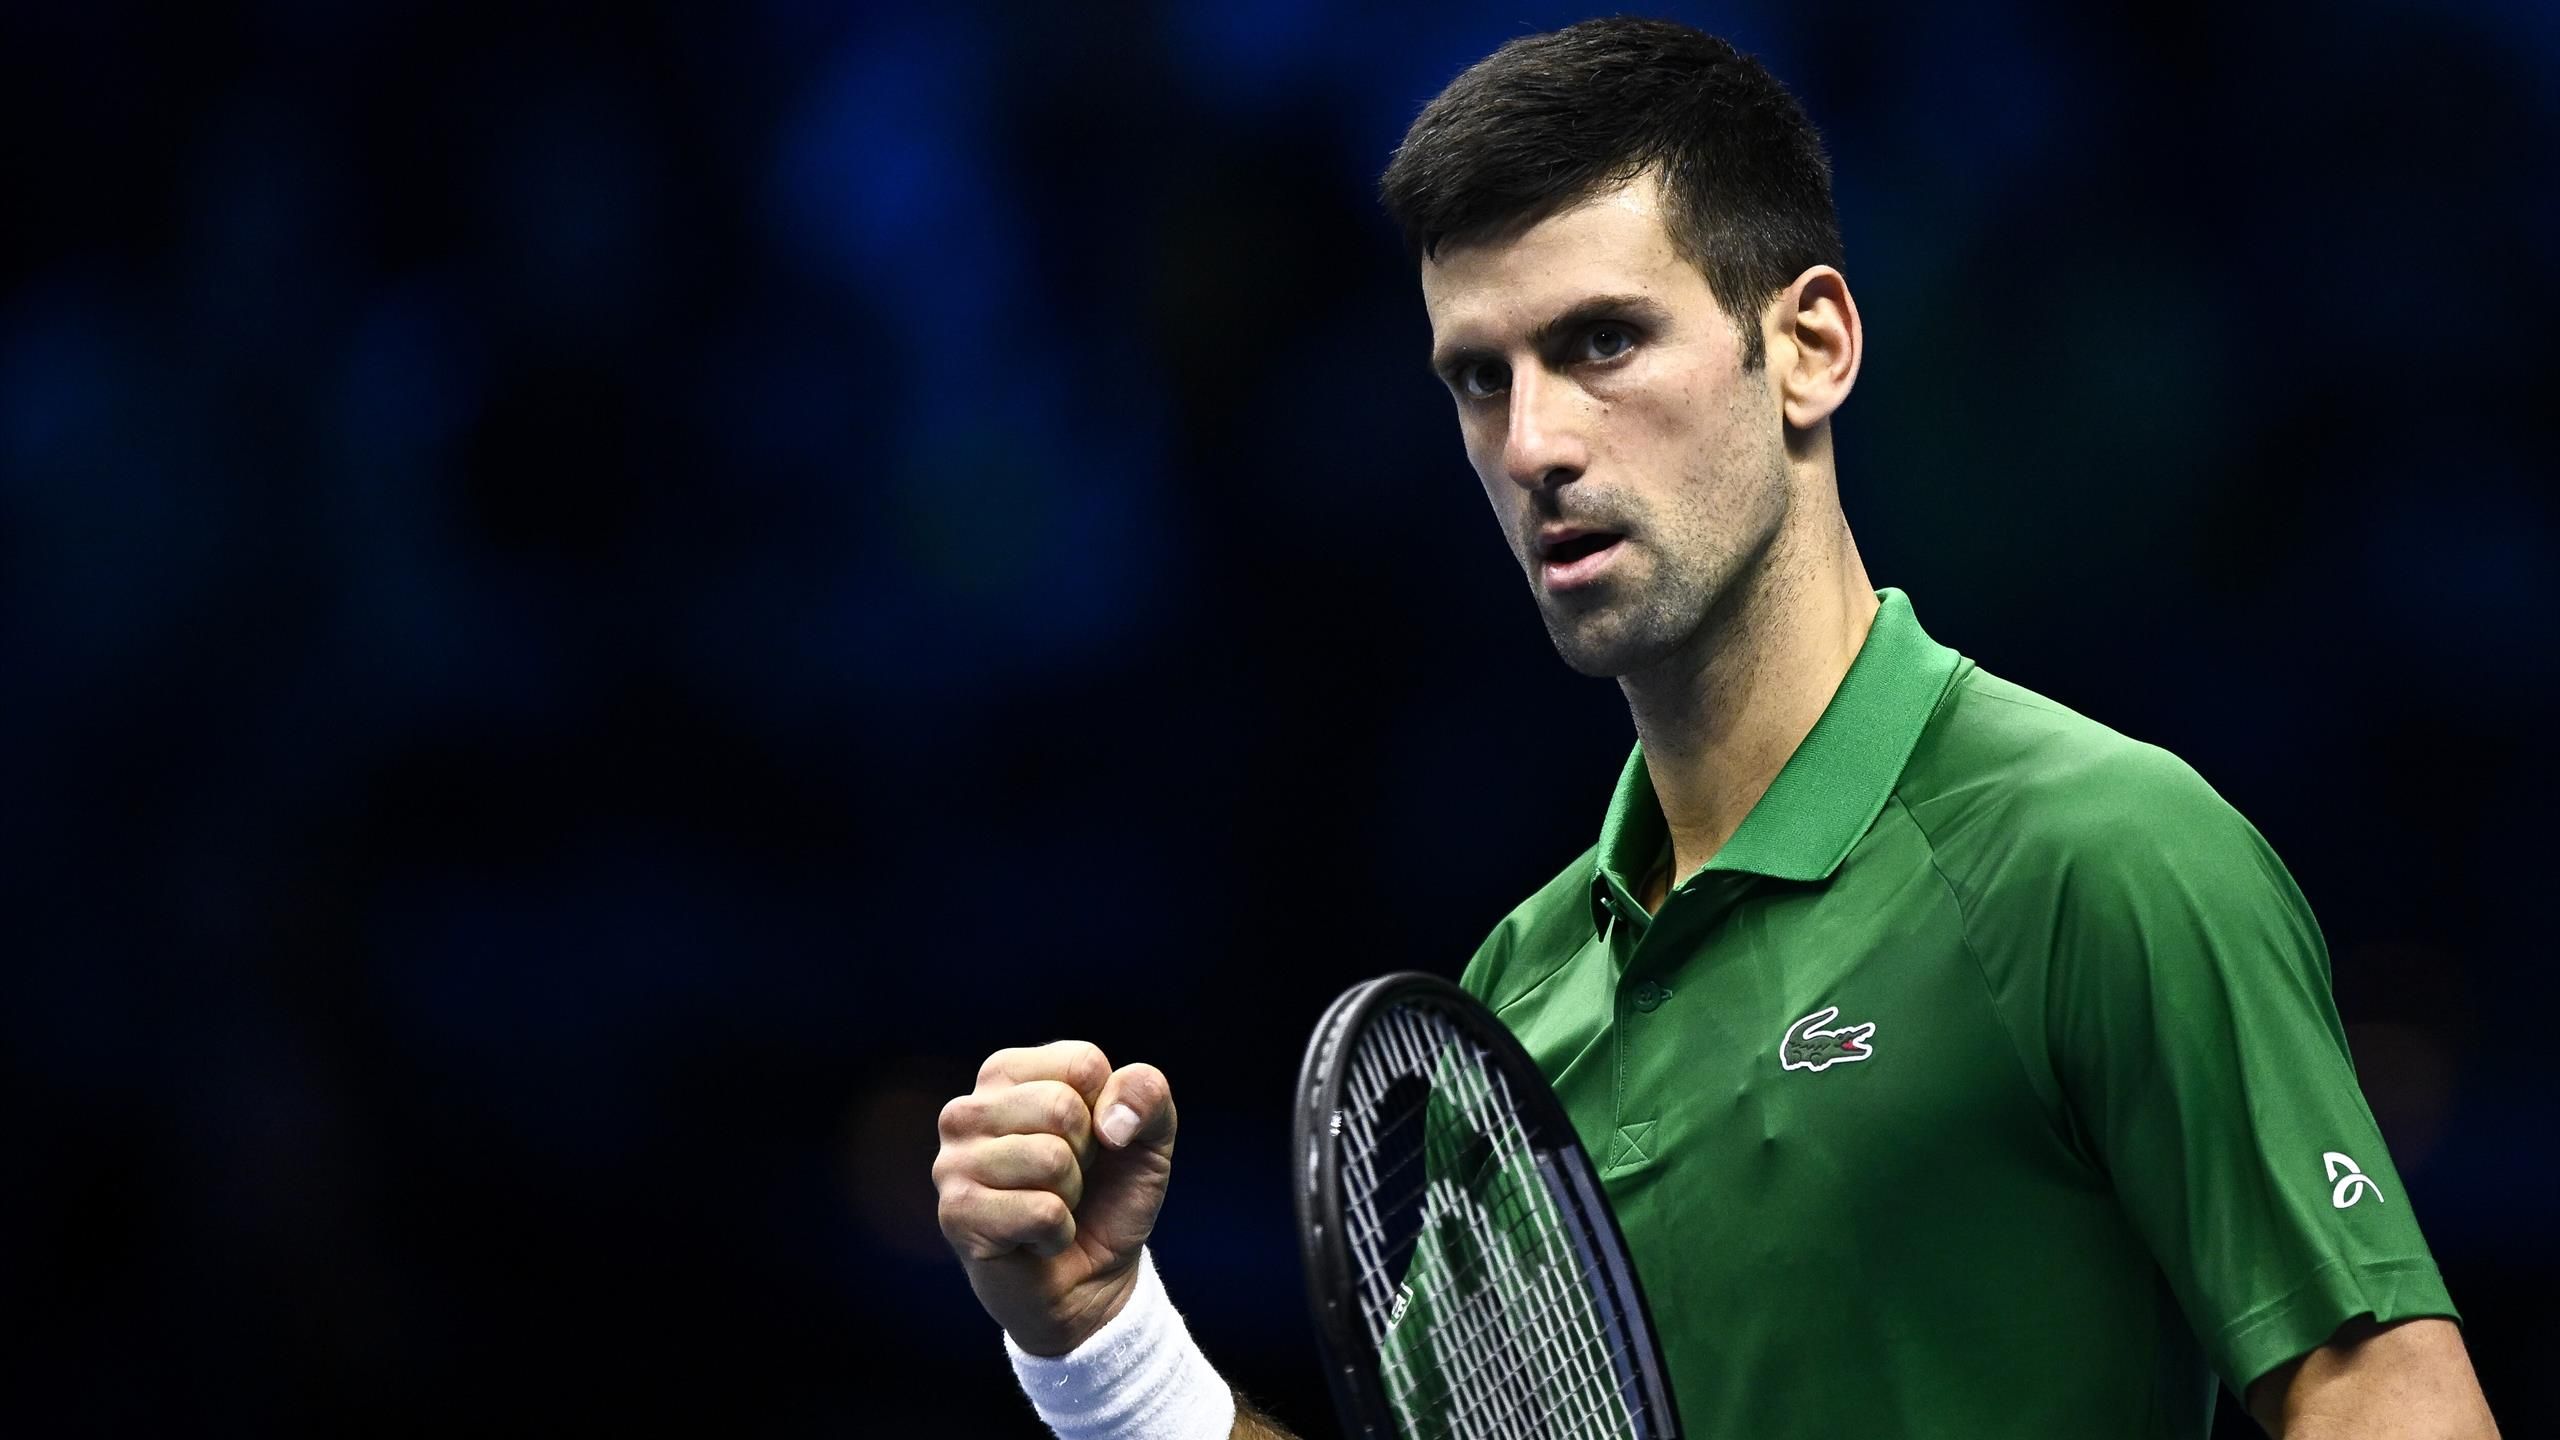 ATP Finals Turin Novak Djokovic gewinnt zwei Tiebreaks gegen Taylor Fritz und stürmt ins Endspiel - Tennis Video